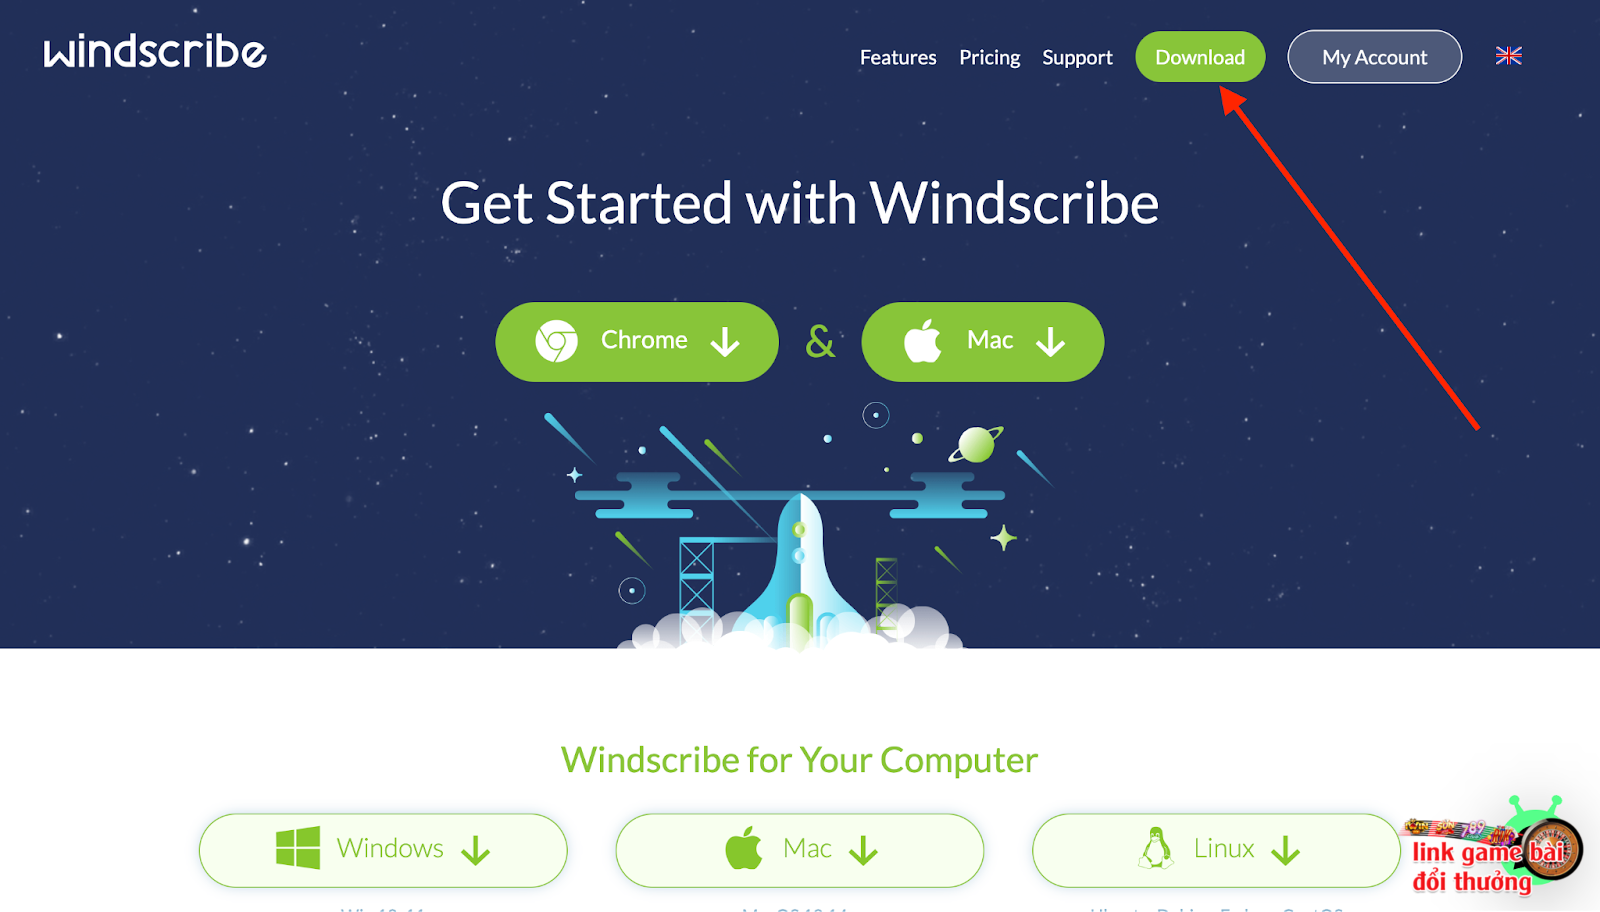 Bấm chọn Download để tải phần mềm Windscribe về máy 